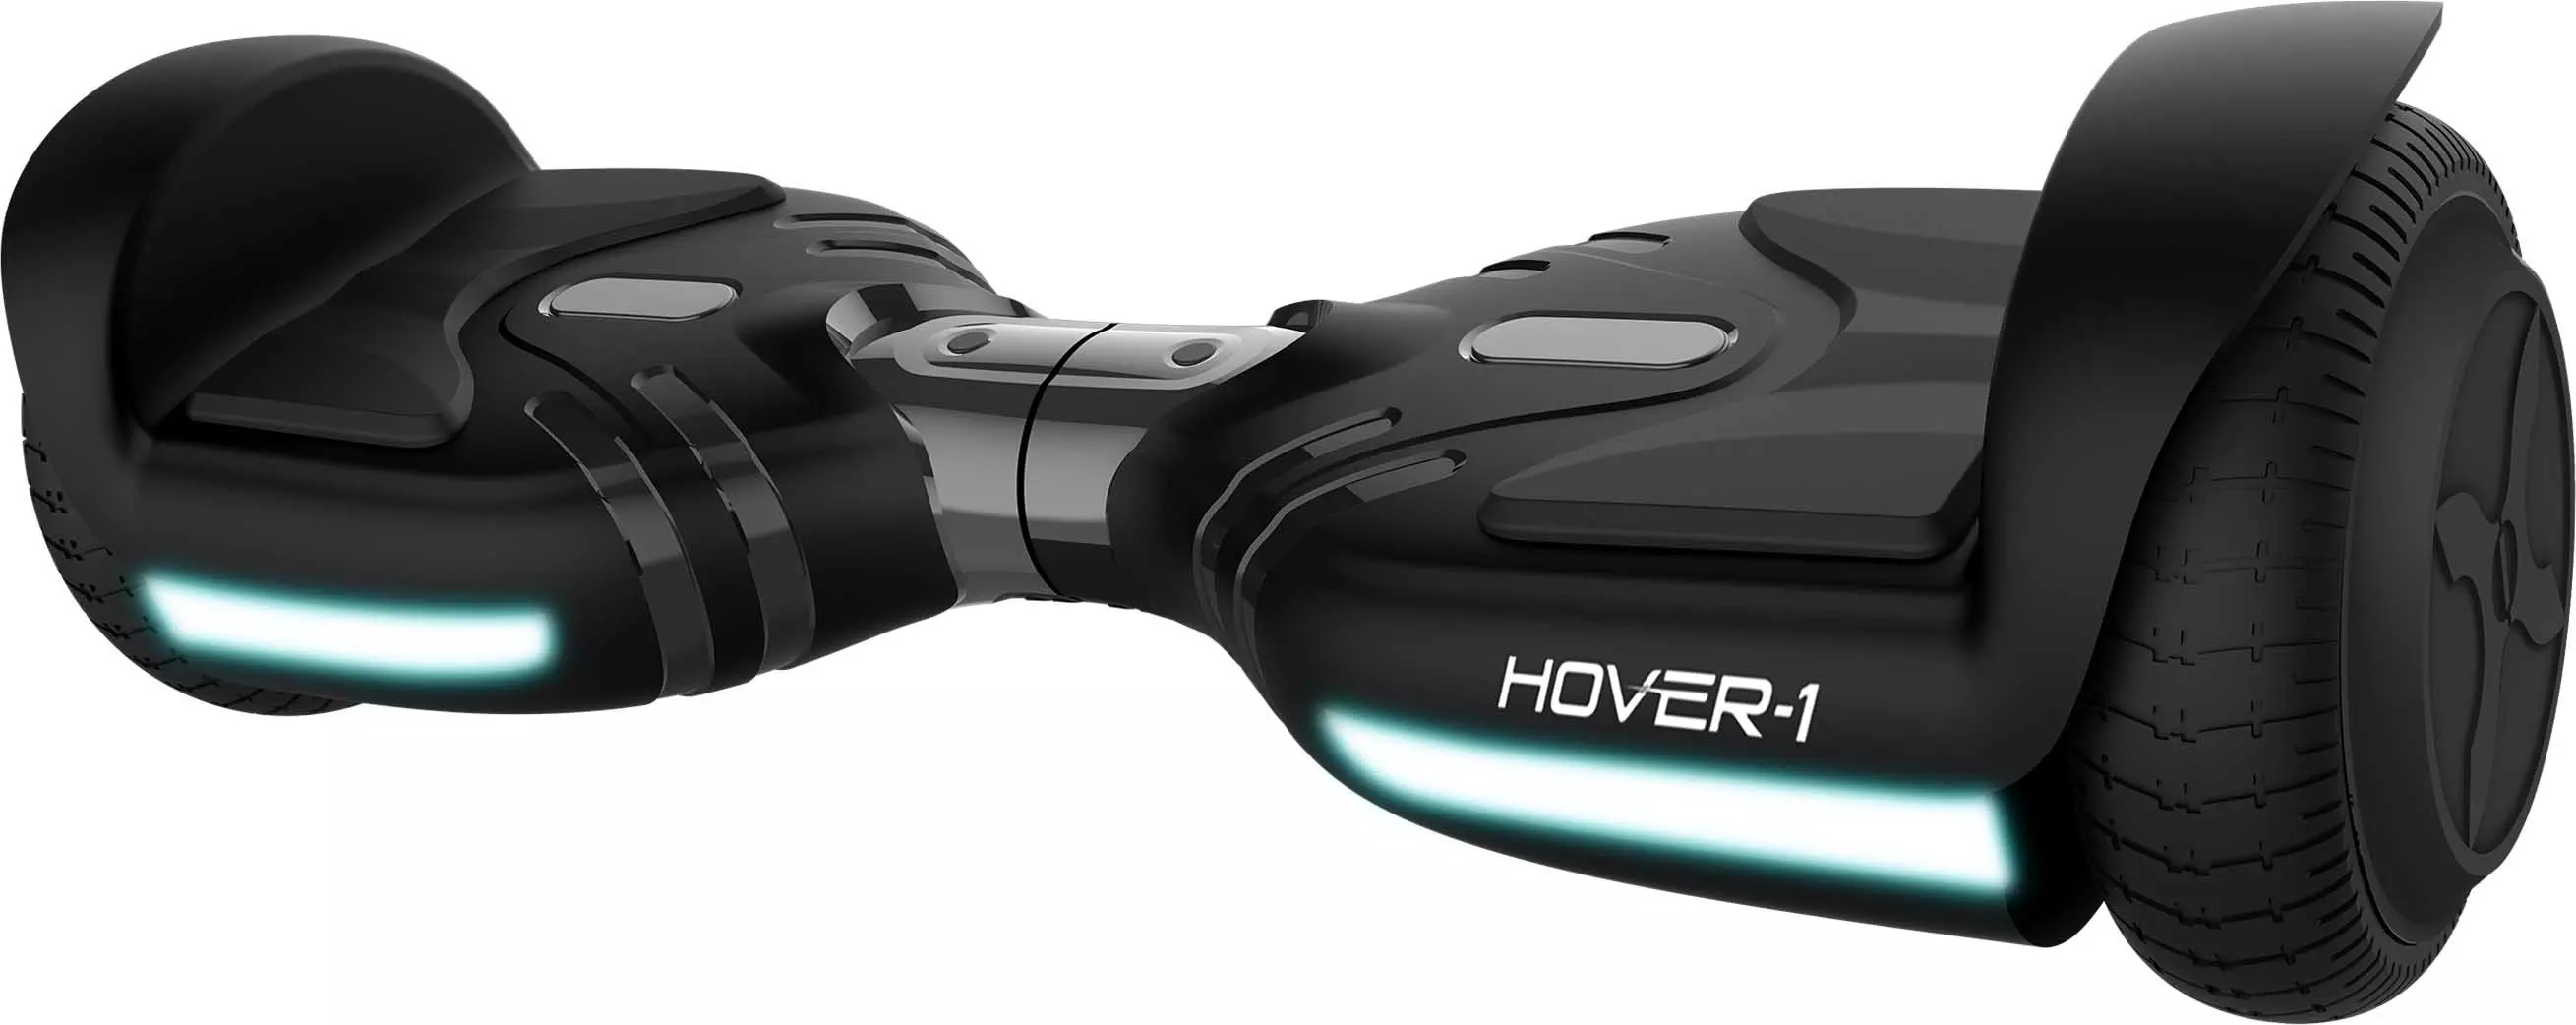 Hover-1 Maverick Black Hoverboard 